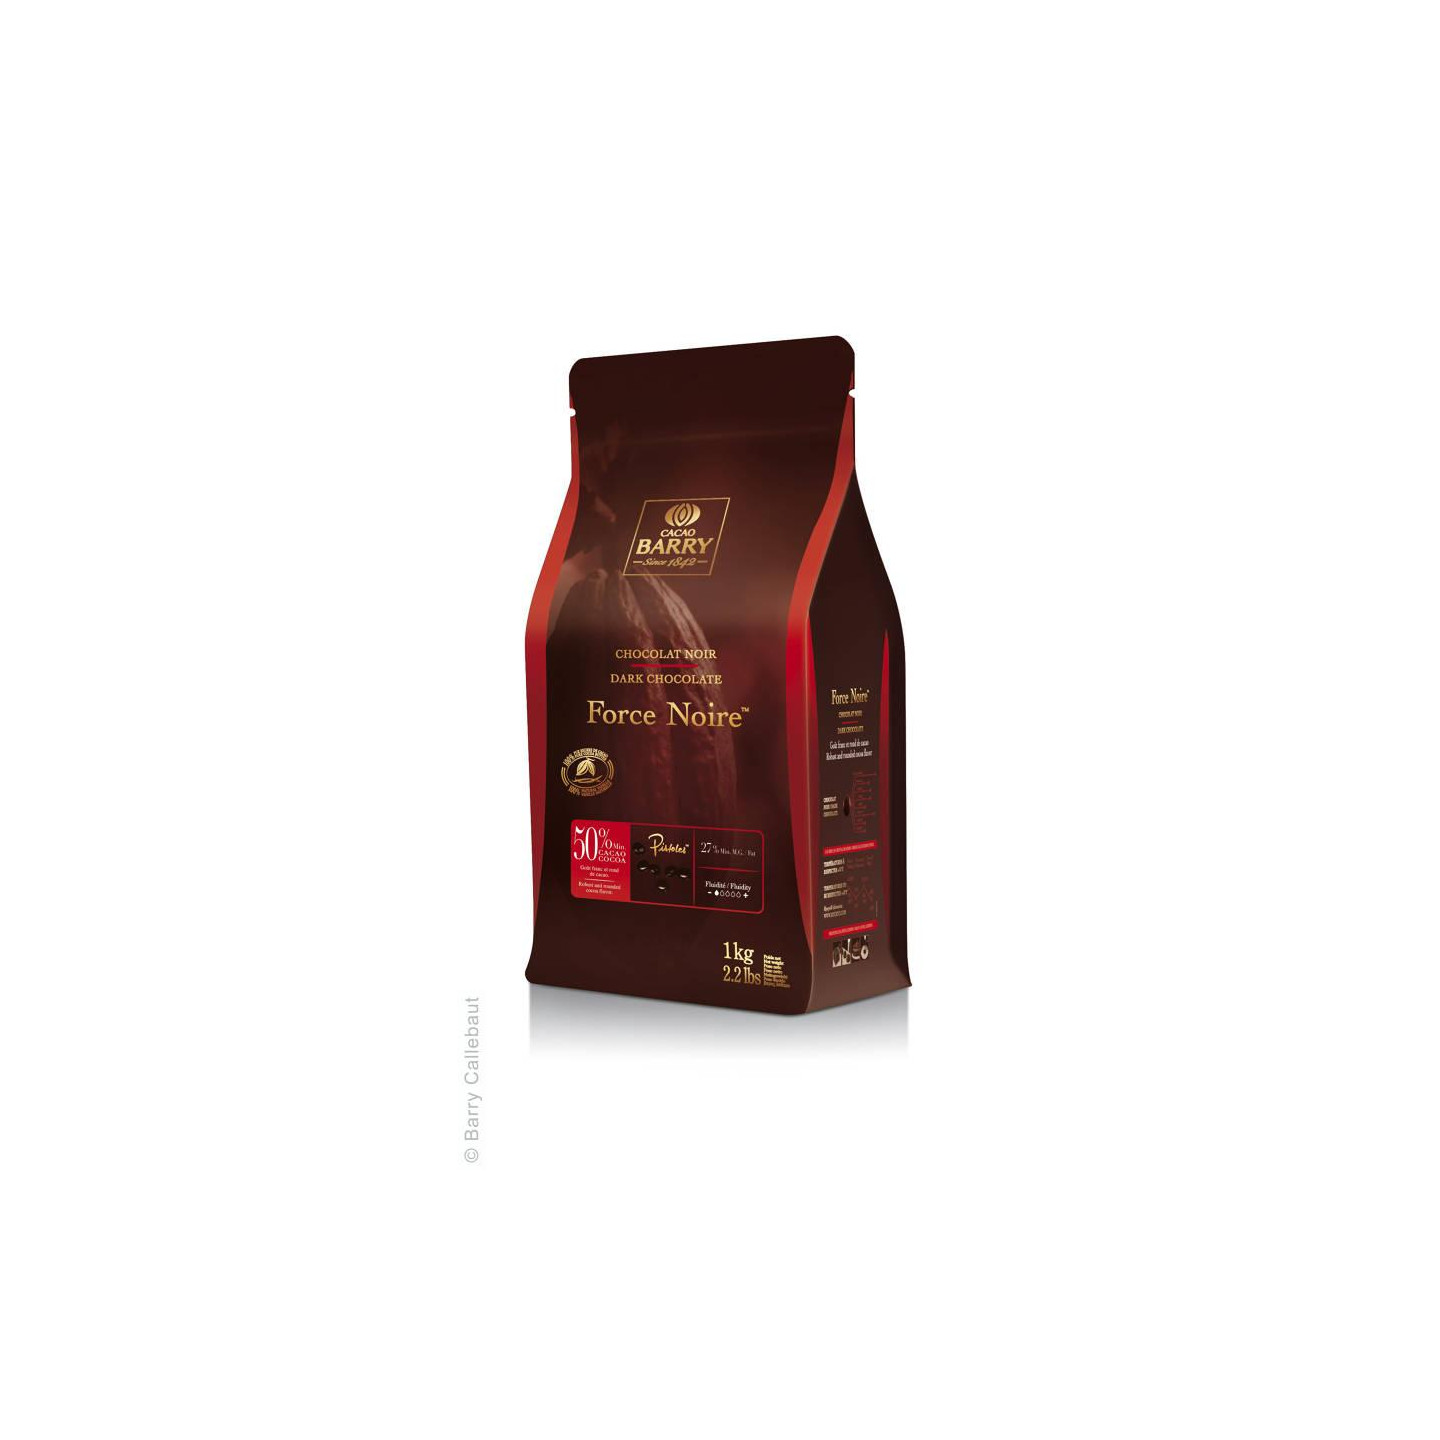 Chocolat noir Force Noire 50% - 1 kg - Cacao Barry